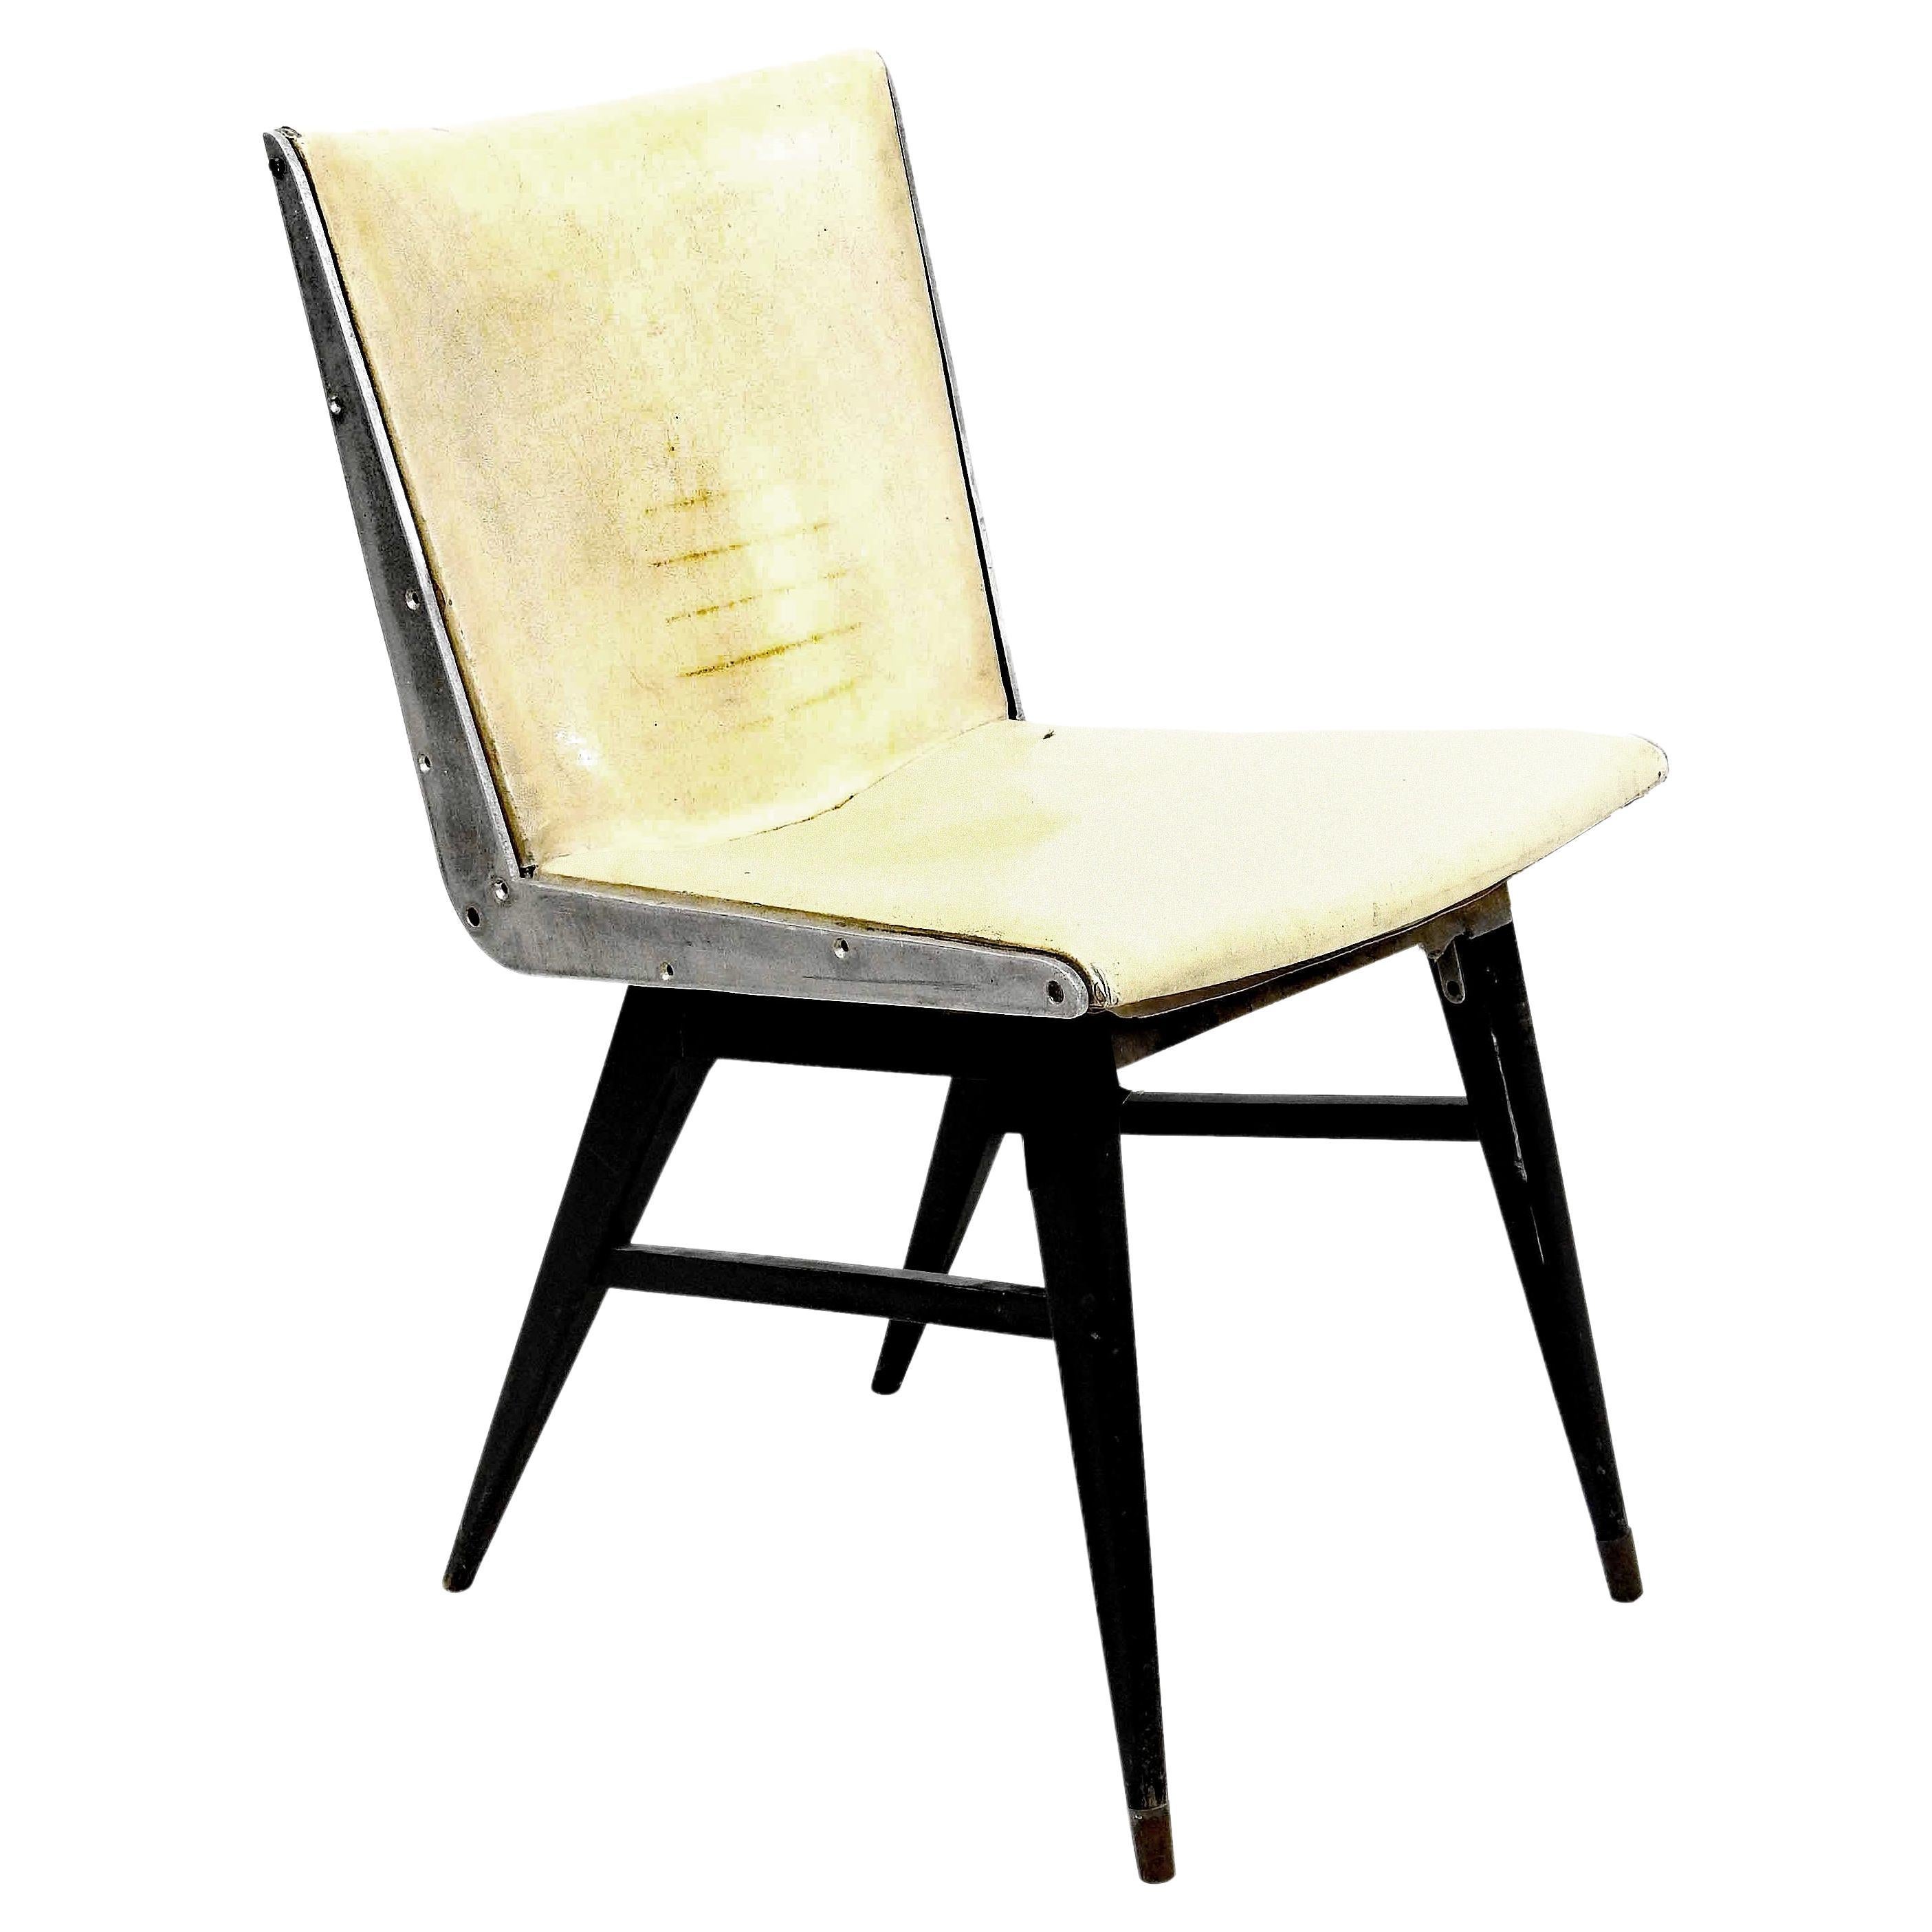 Chaise en bois noirci et aluminium dans le style de Jens RISOM. 